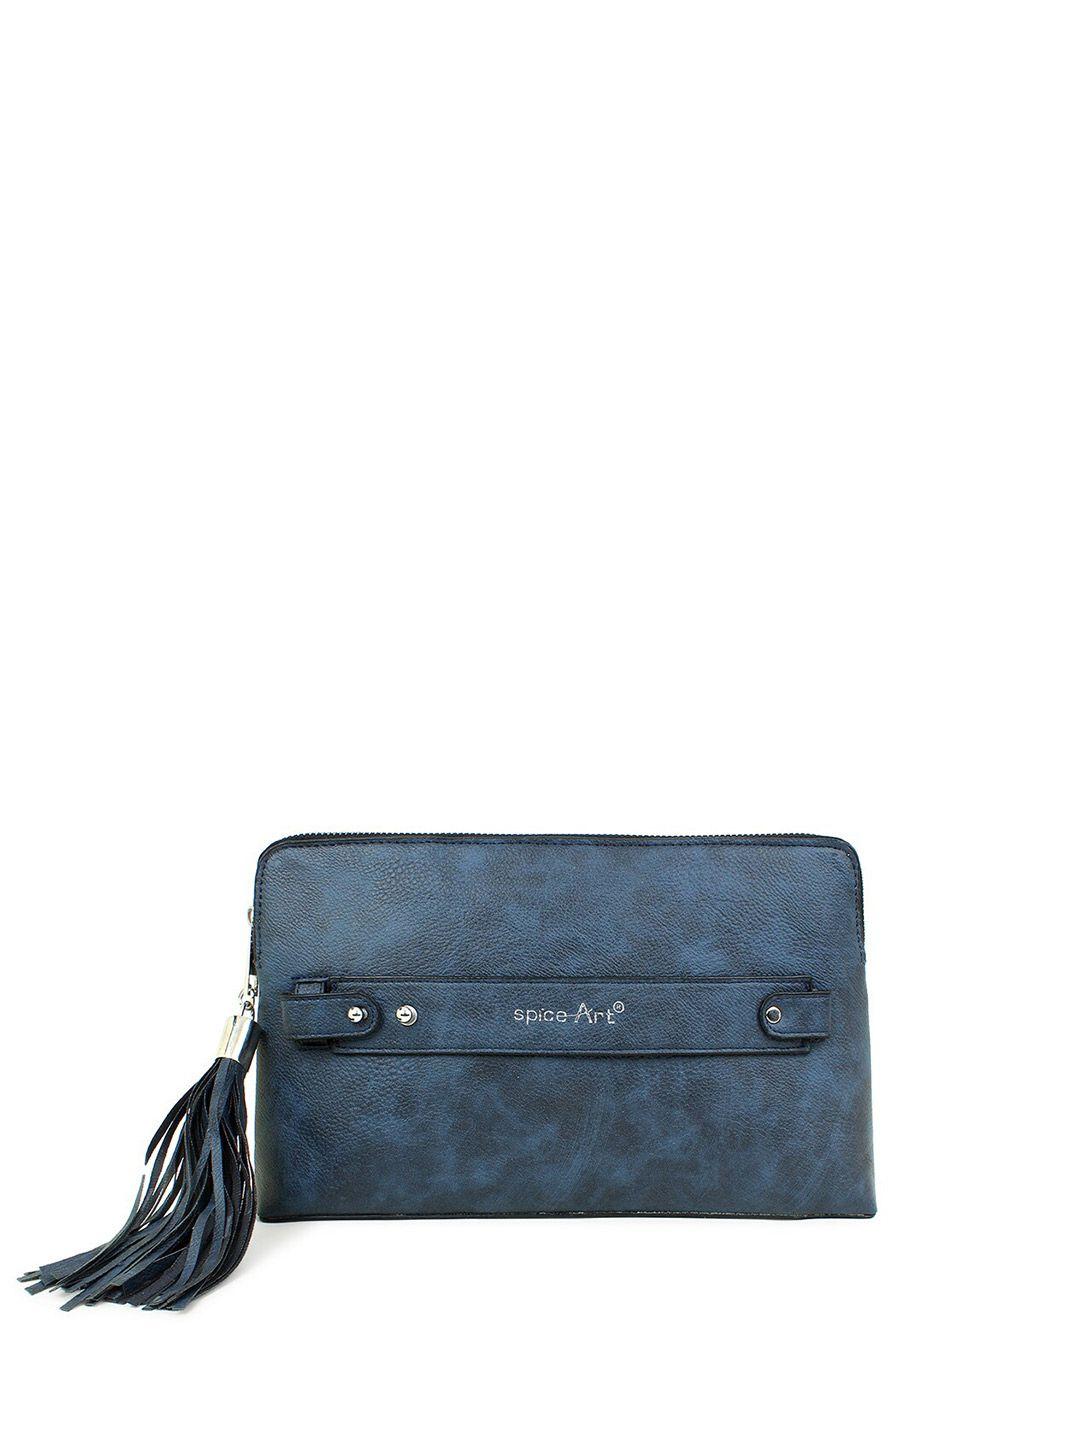 spice-art-navy-blue-textured-tasselled-purse-clutch